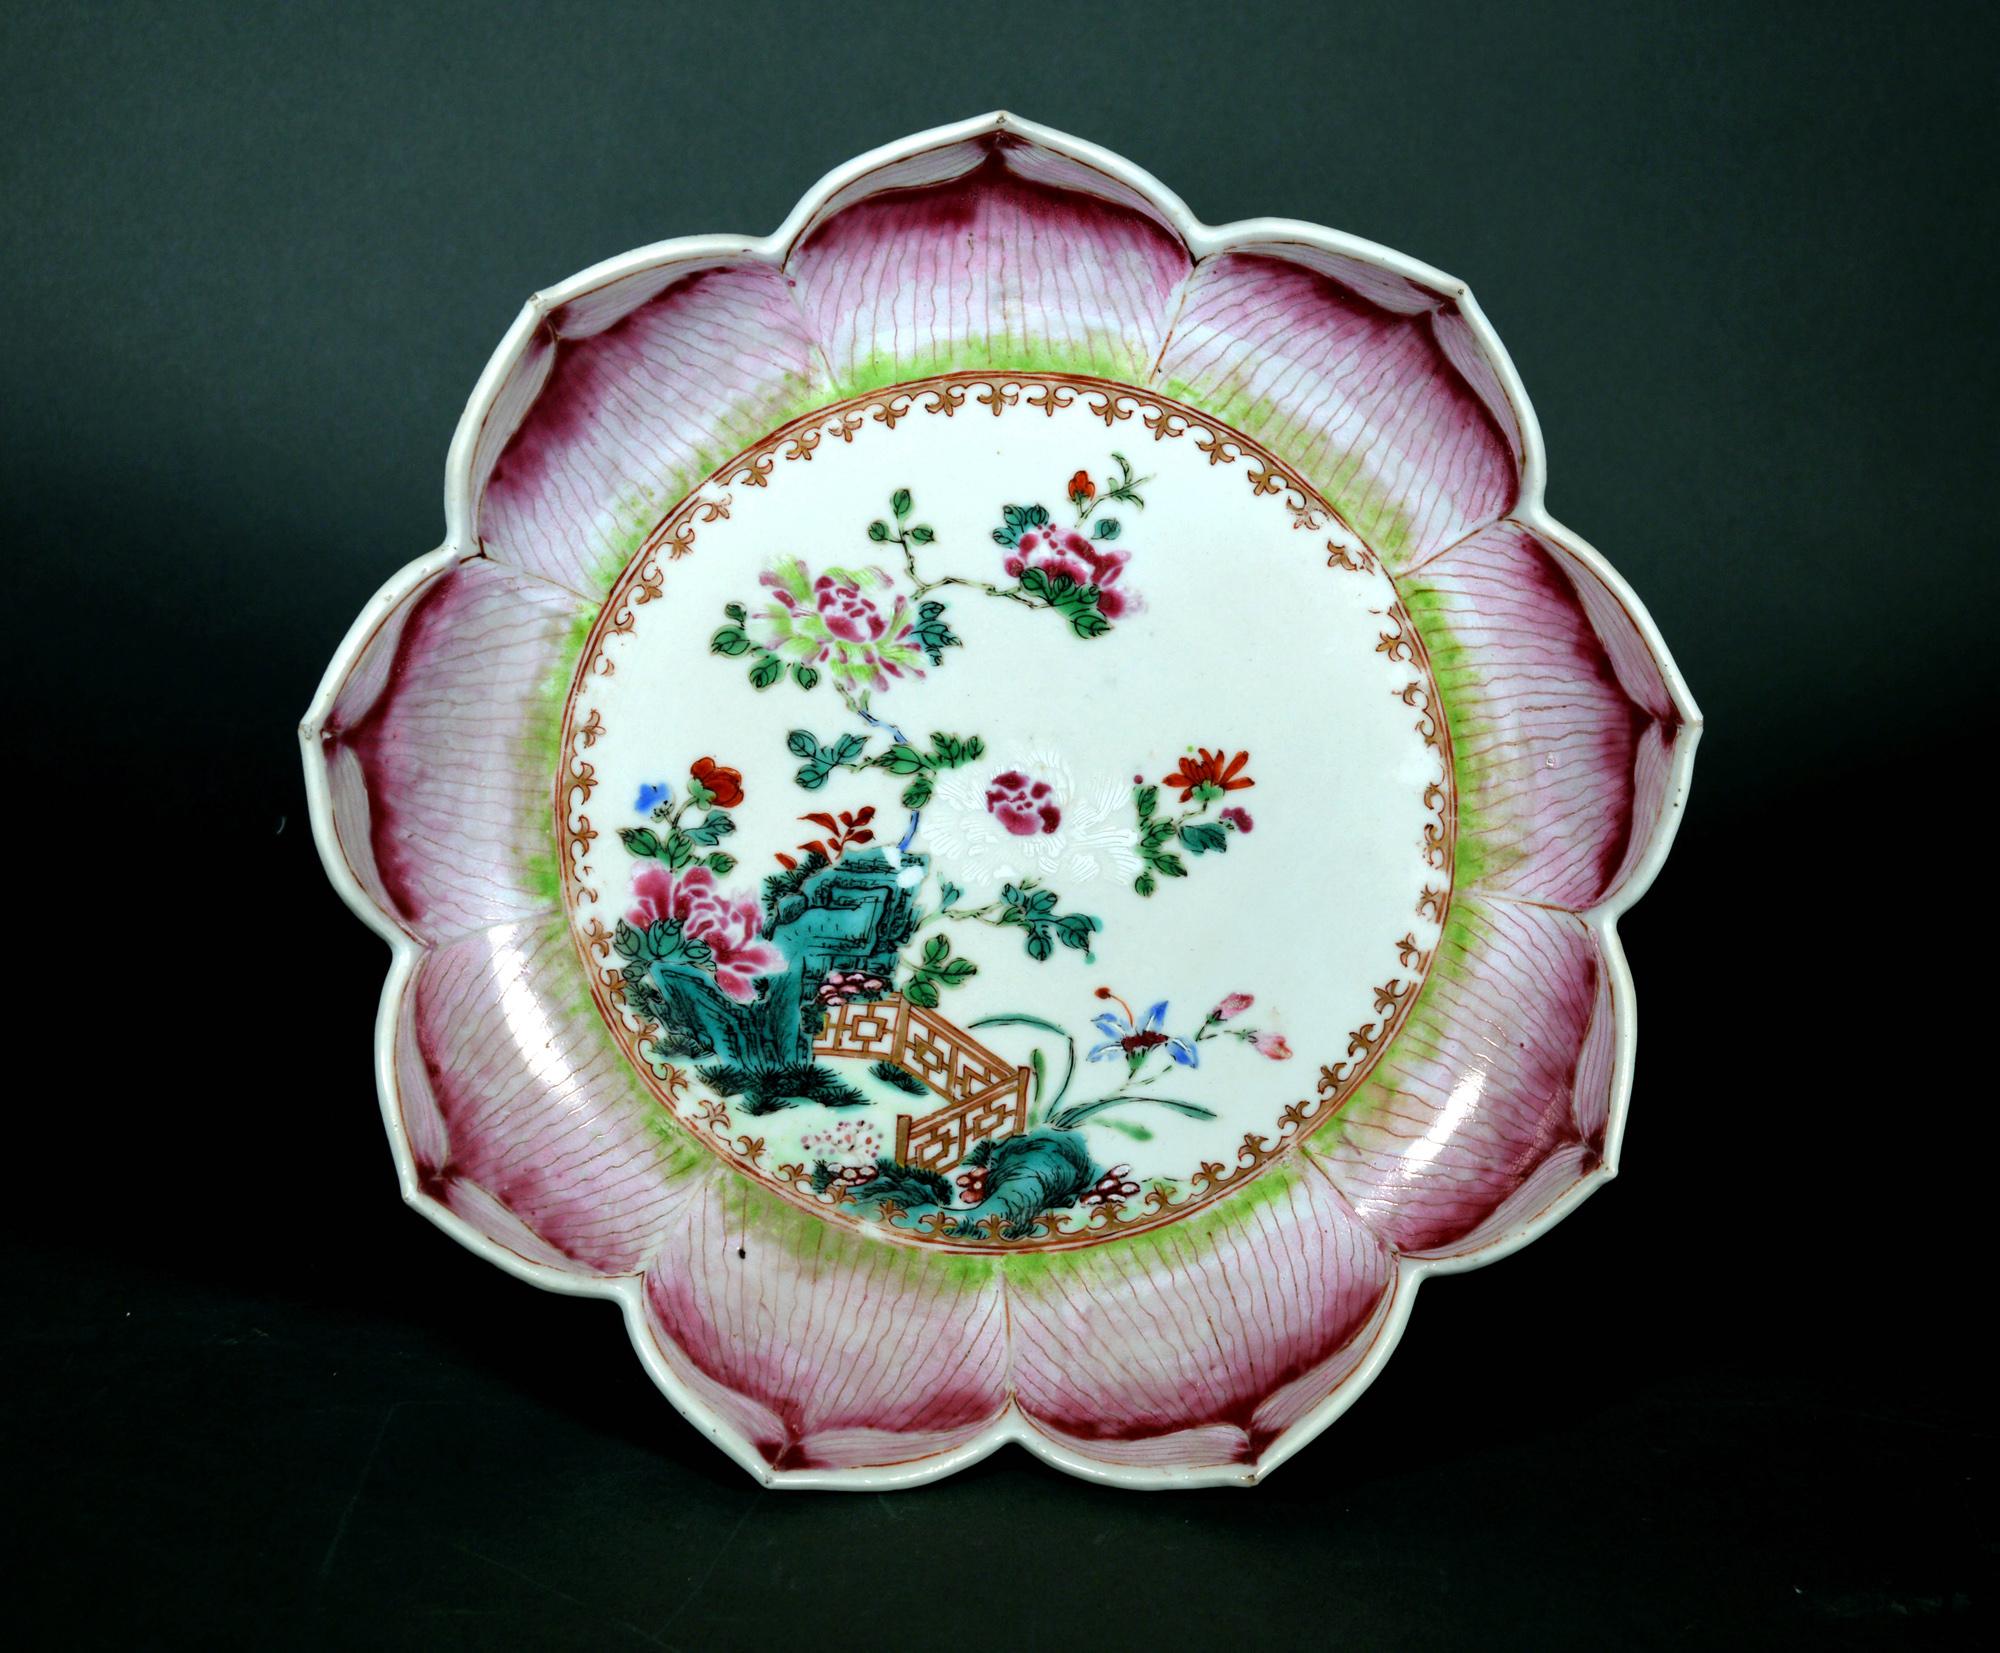 Plat en porcelaine d'exportation chinoise en forme de feuille de lotus,
Vers 1765

Ce grand plat à soucoupe en porcelaine d'exportation chinoise 